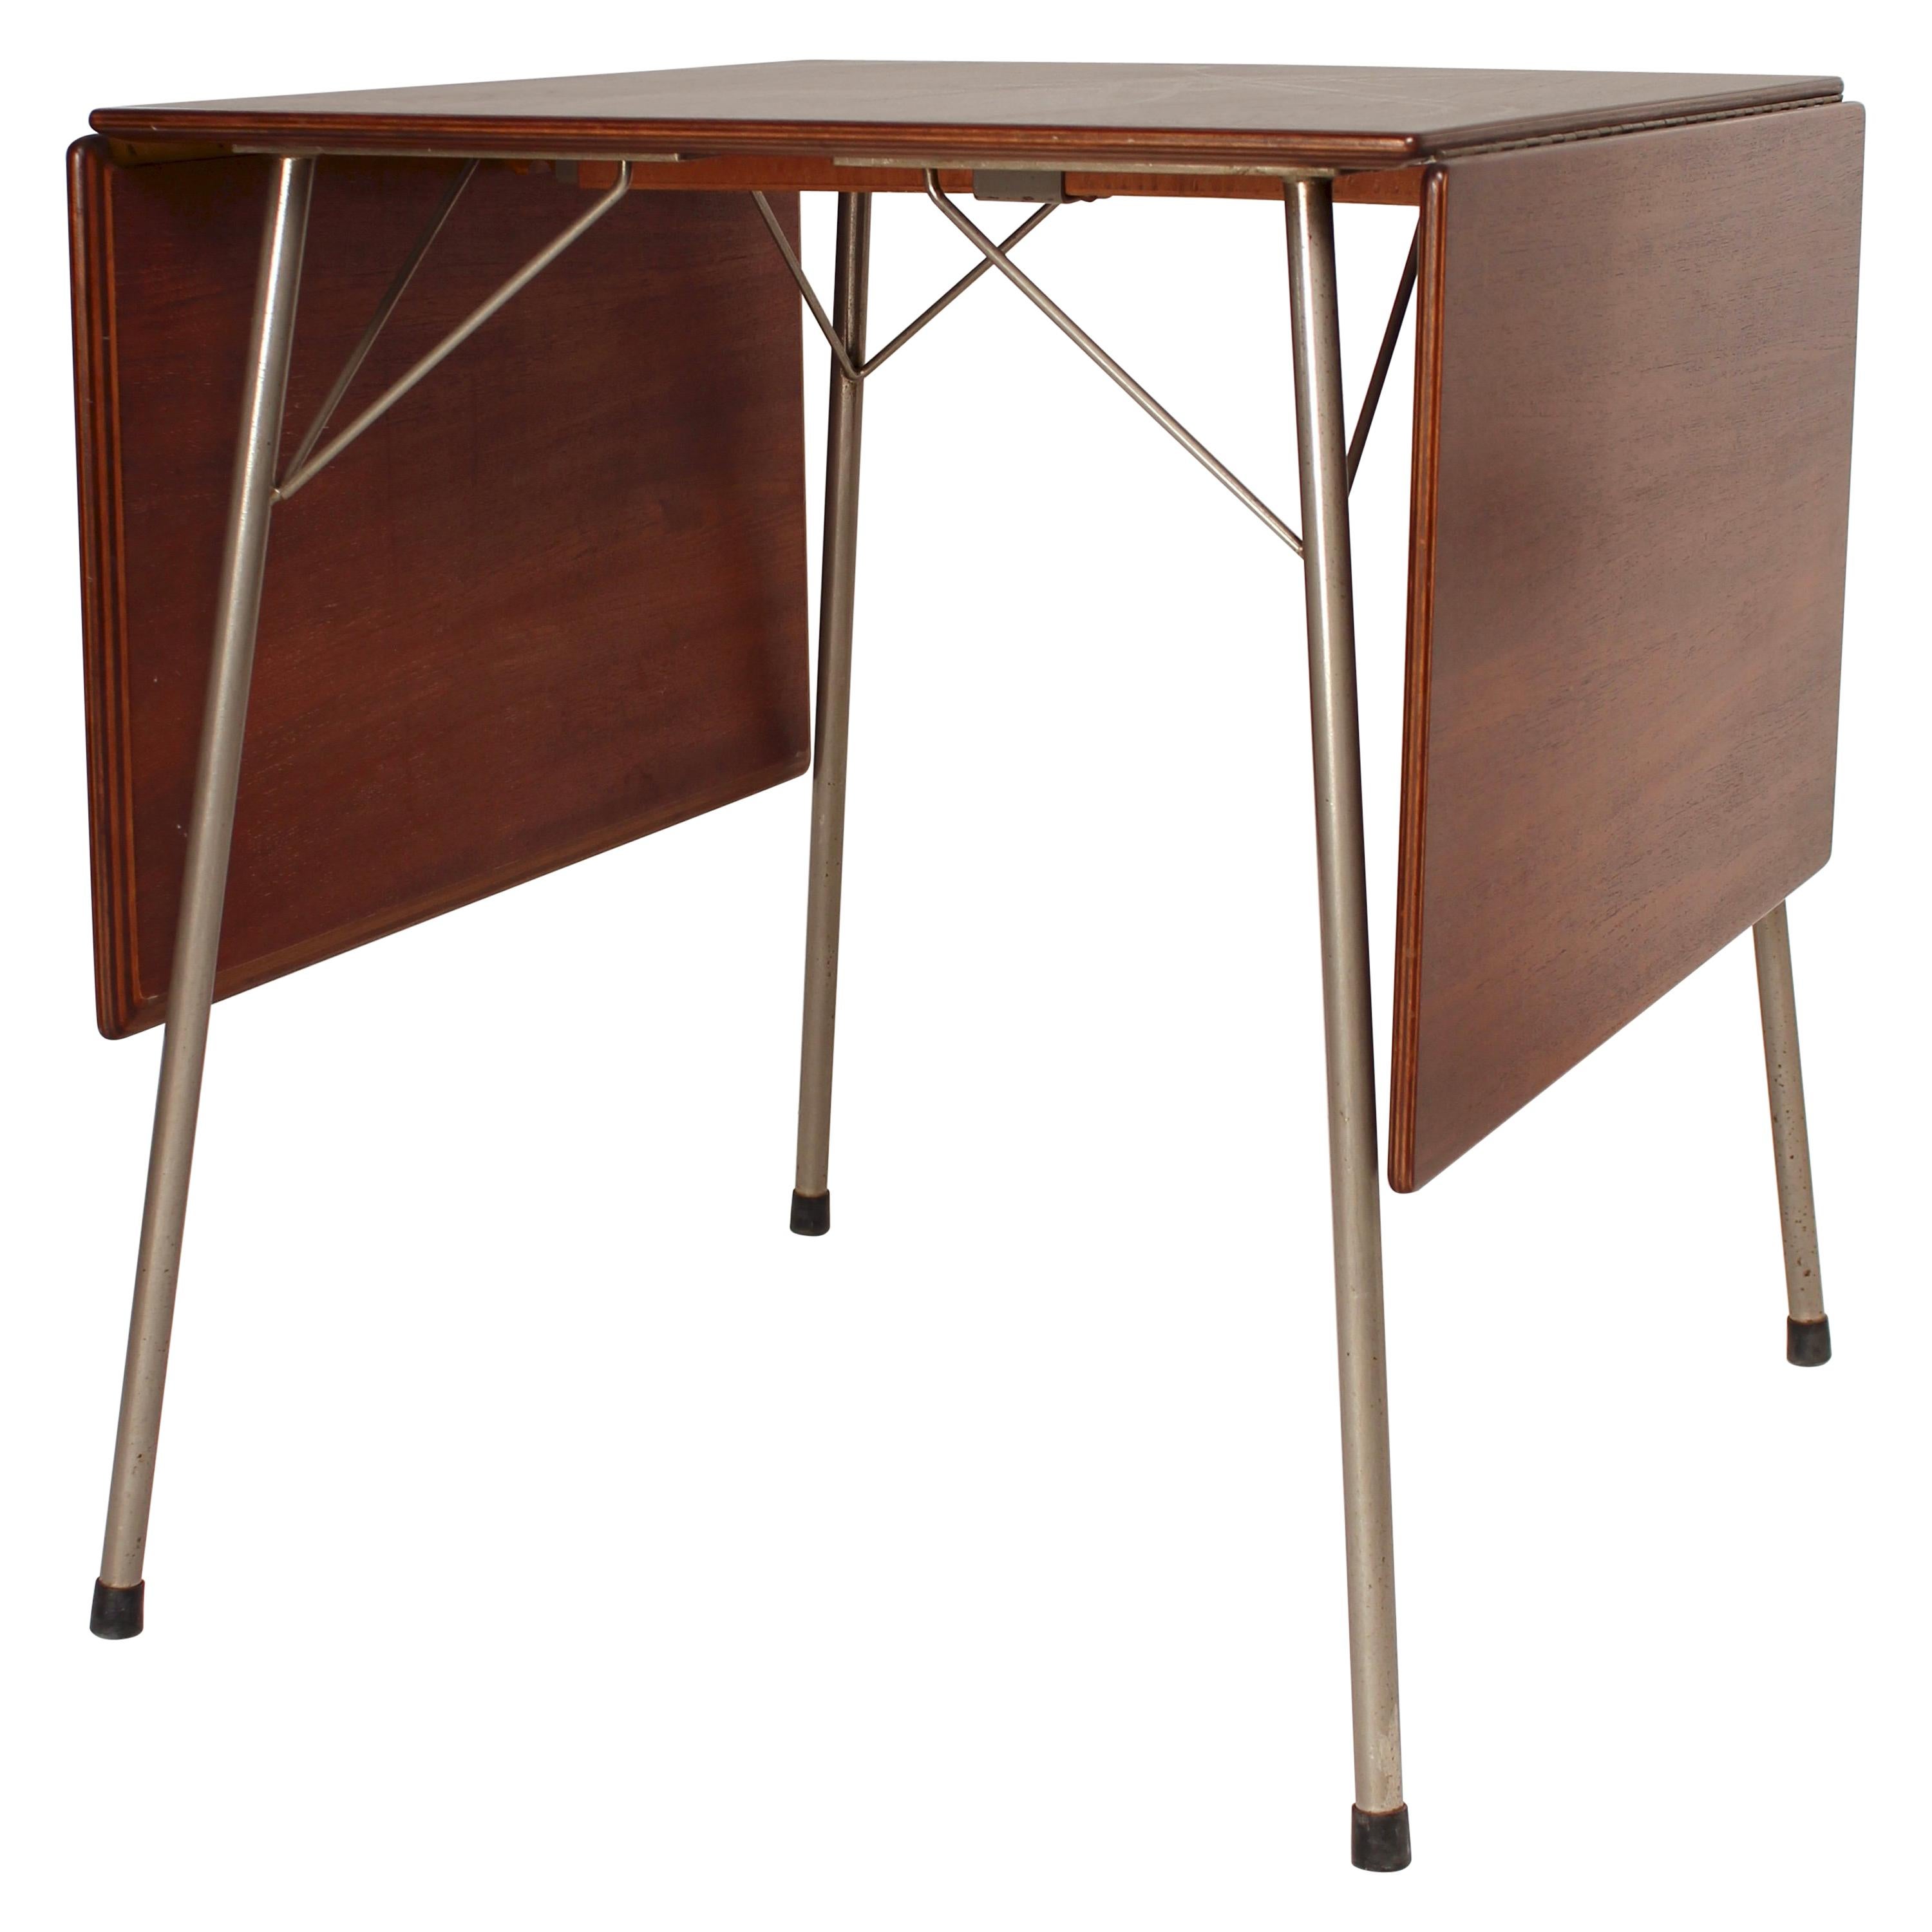 Danish Folding Dining Table by Arne Jacobsen for Fritz Hansen Model 3601, 1950s